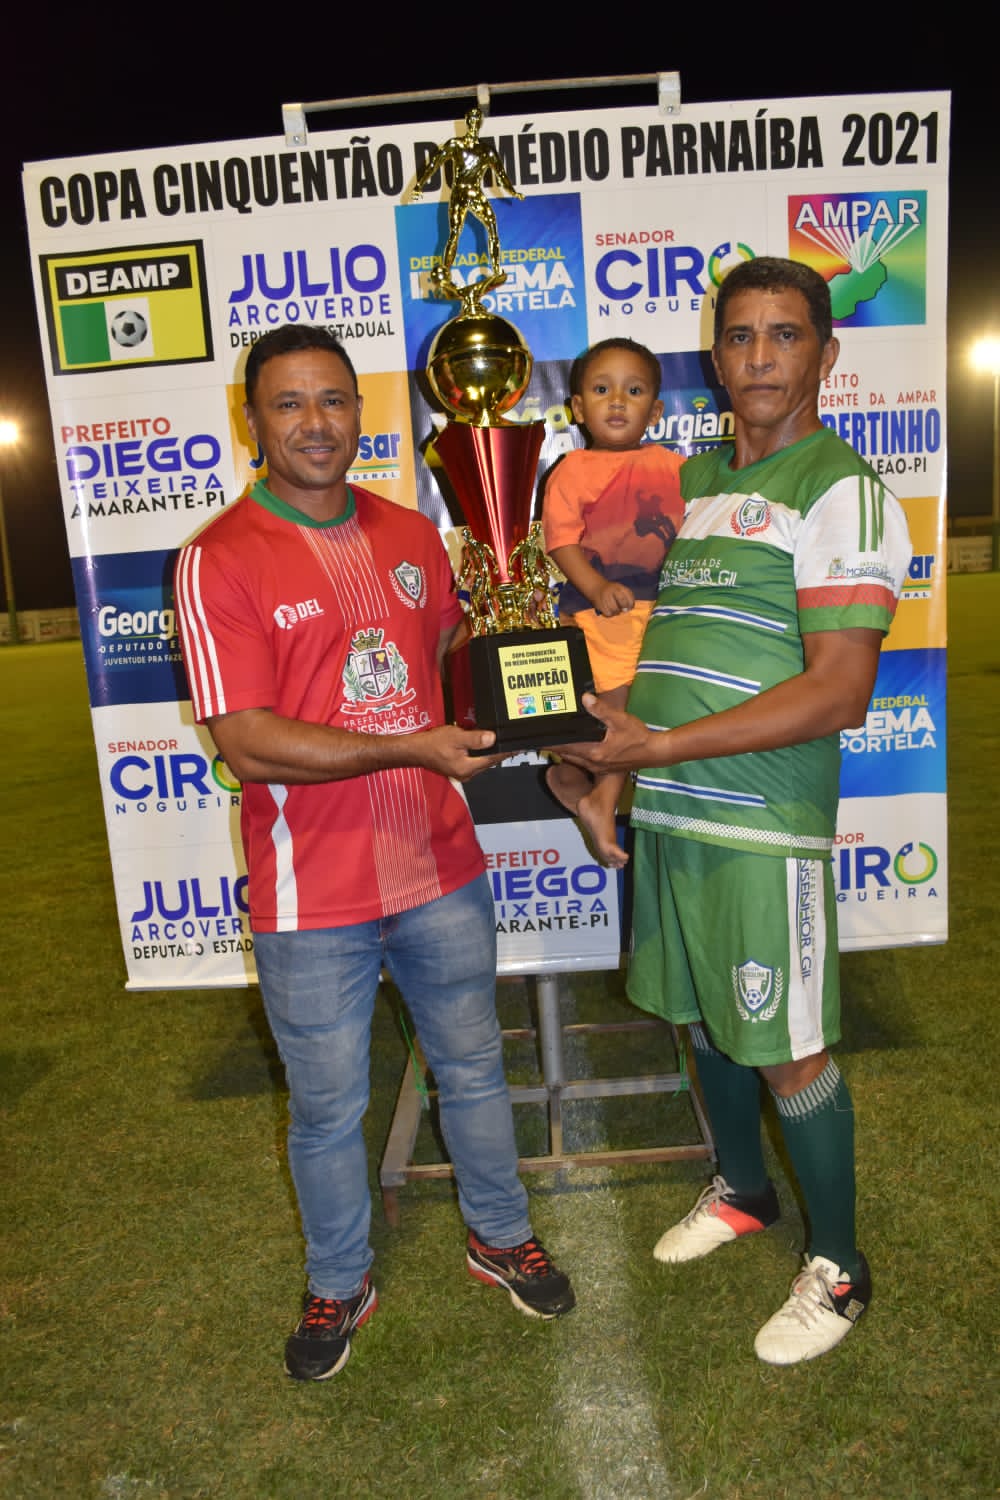 Monsenhor Gil campeão da Copa Cinquentão do Médio Parnaíba - Imagem 19